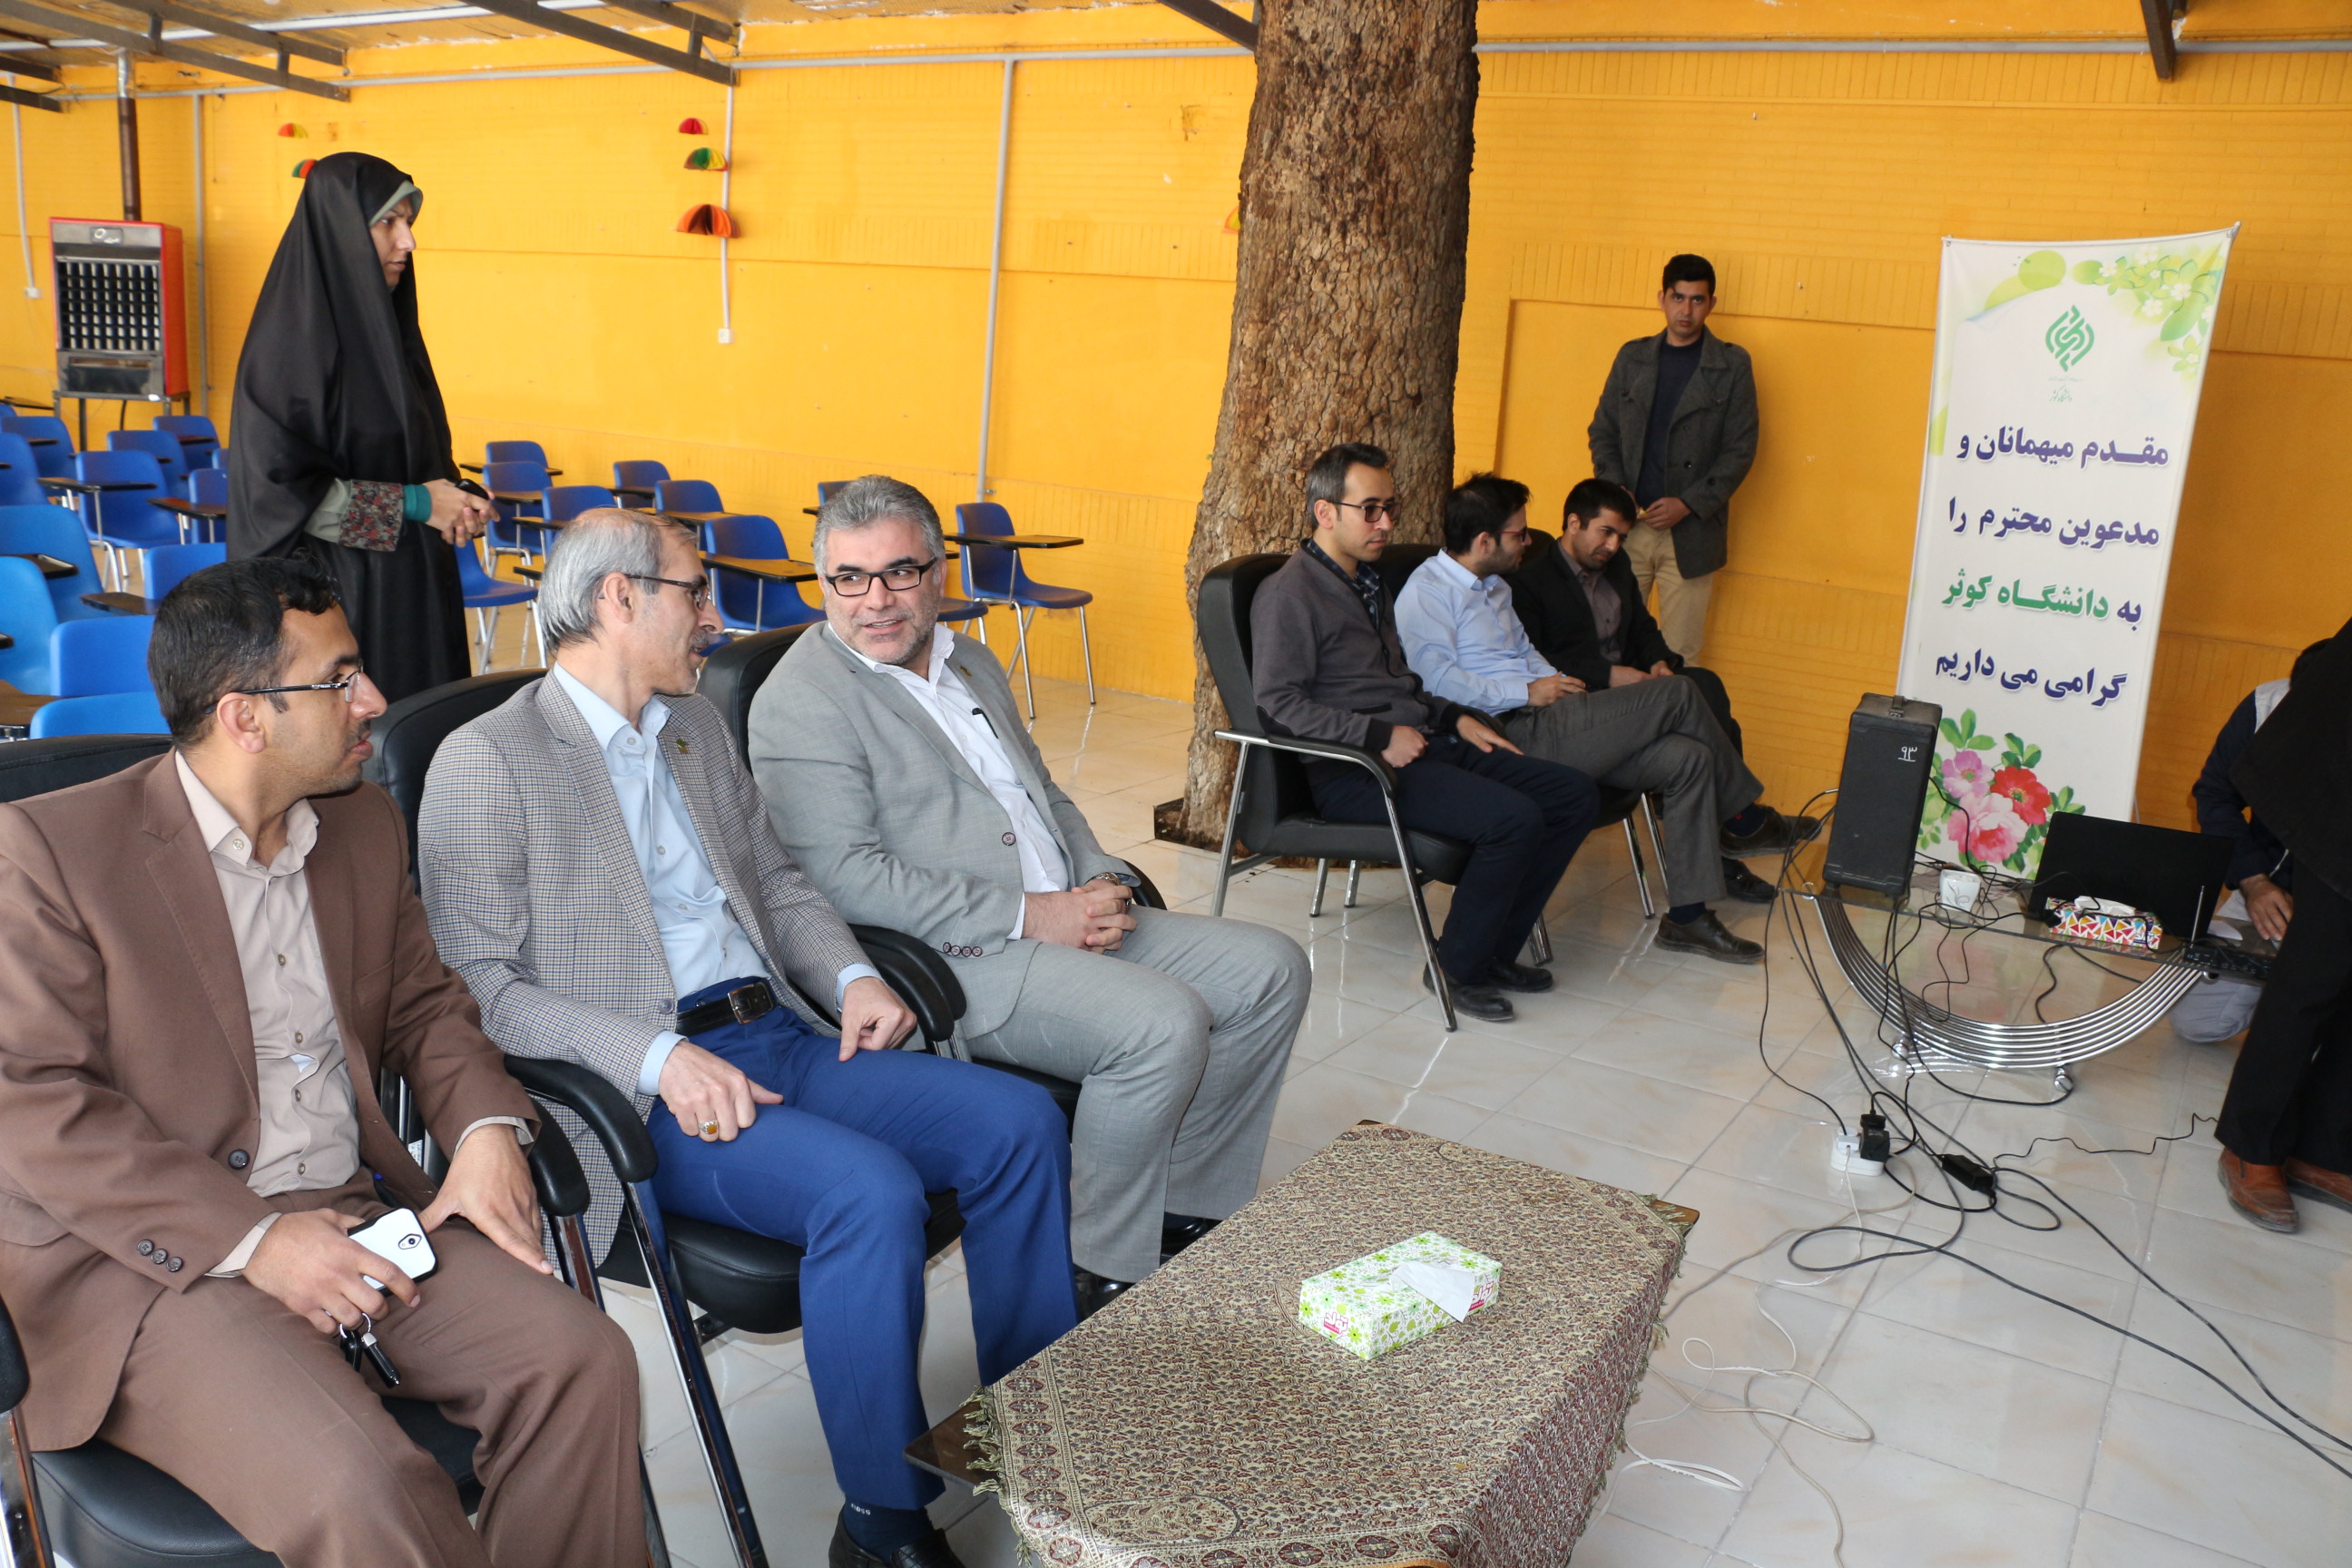 افتتاحیه رادیو دانشگاه کوثر با حضور دکتر حسینی رئیس دانشگاه